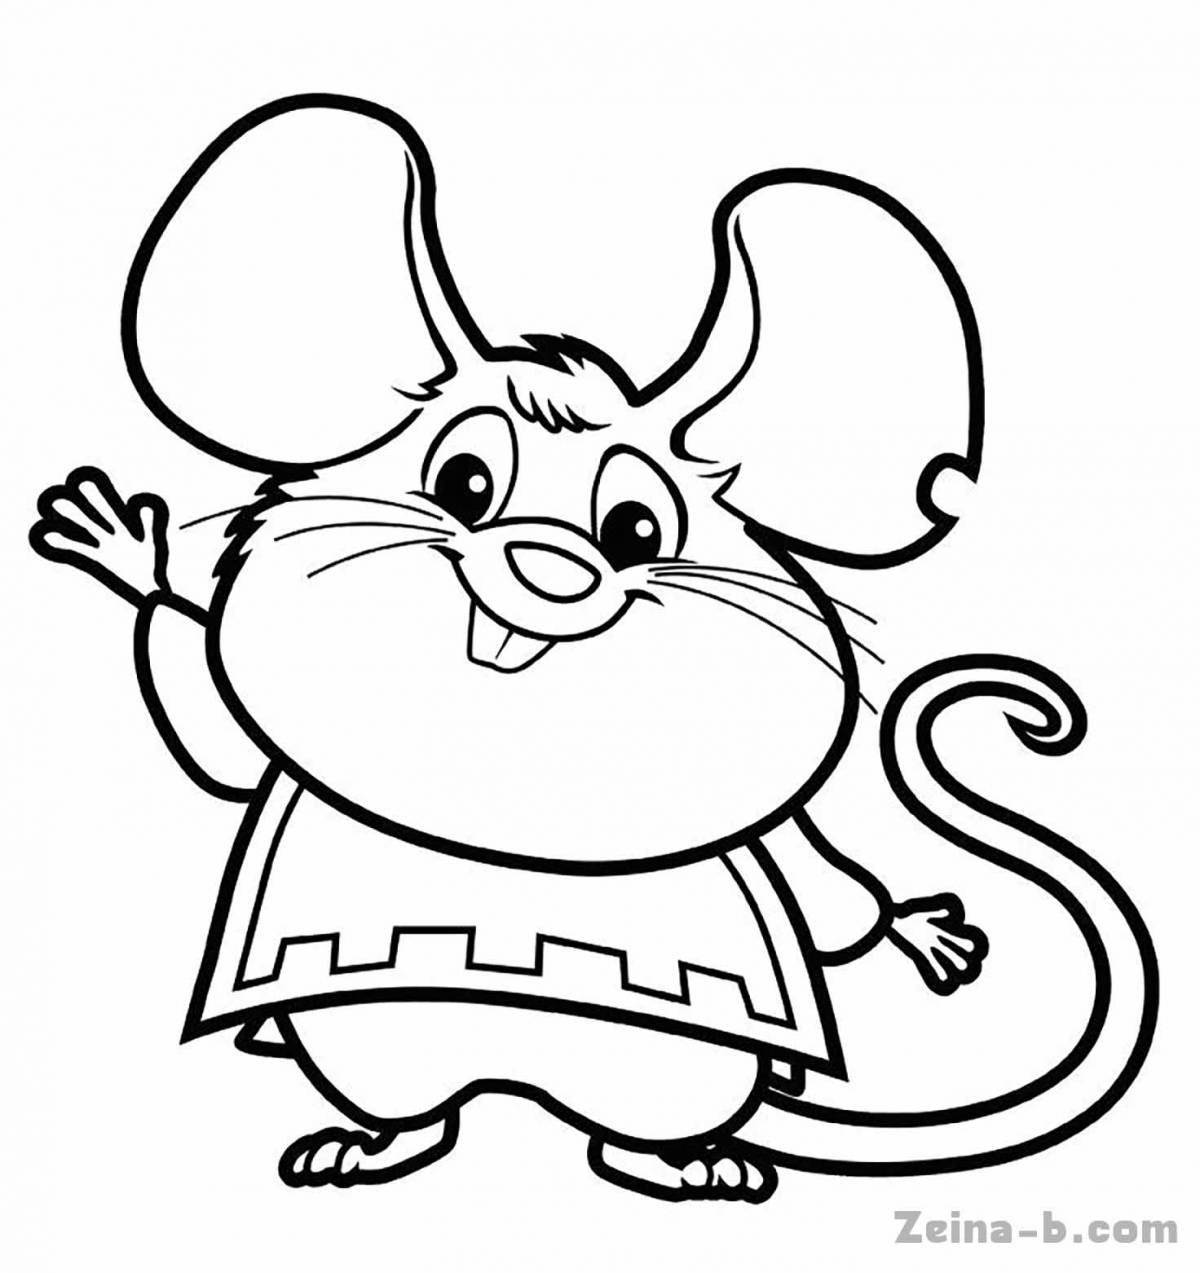 Забавная раскраска мышь для детей